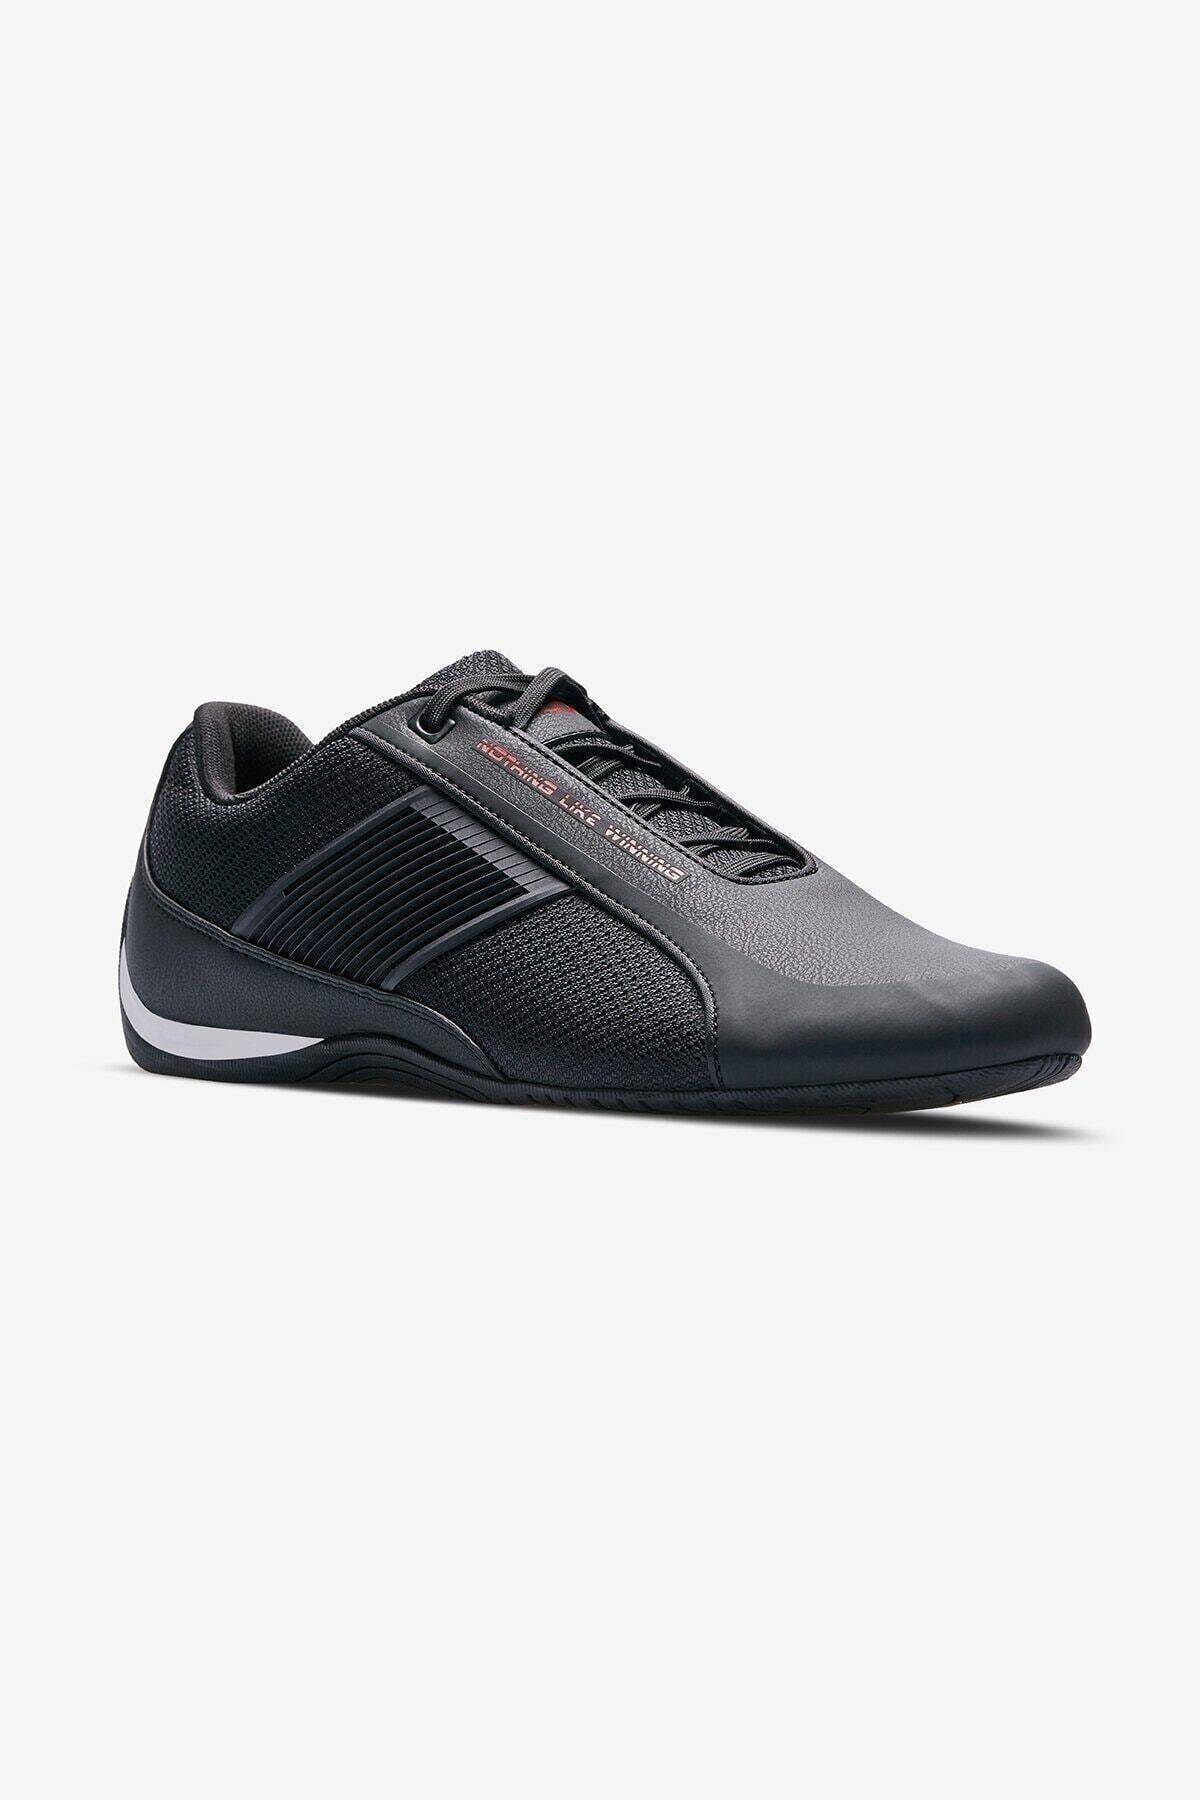 Lescon Çakır Shoes Siyah Sailer-2 Erkek Sneaker Ayakkabı